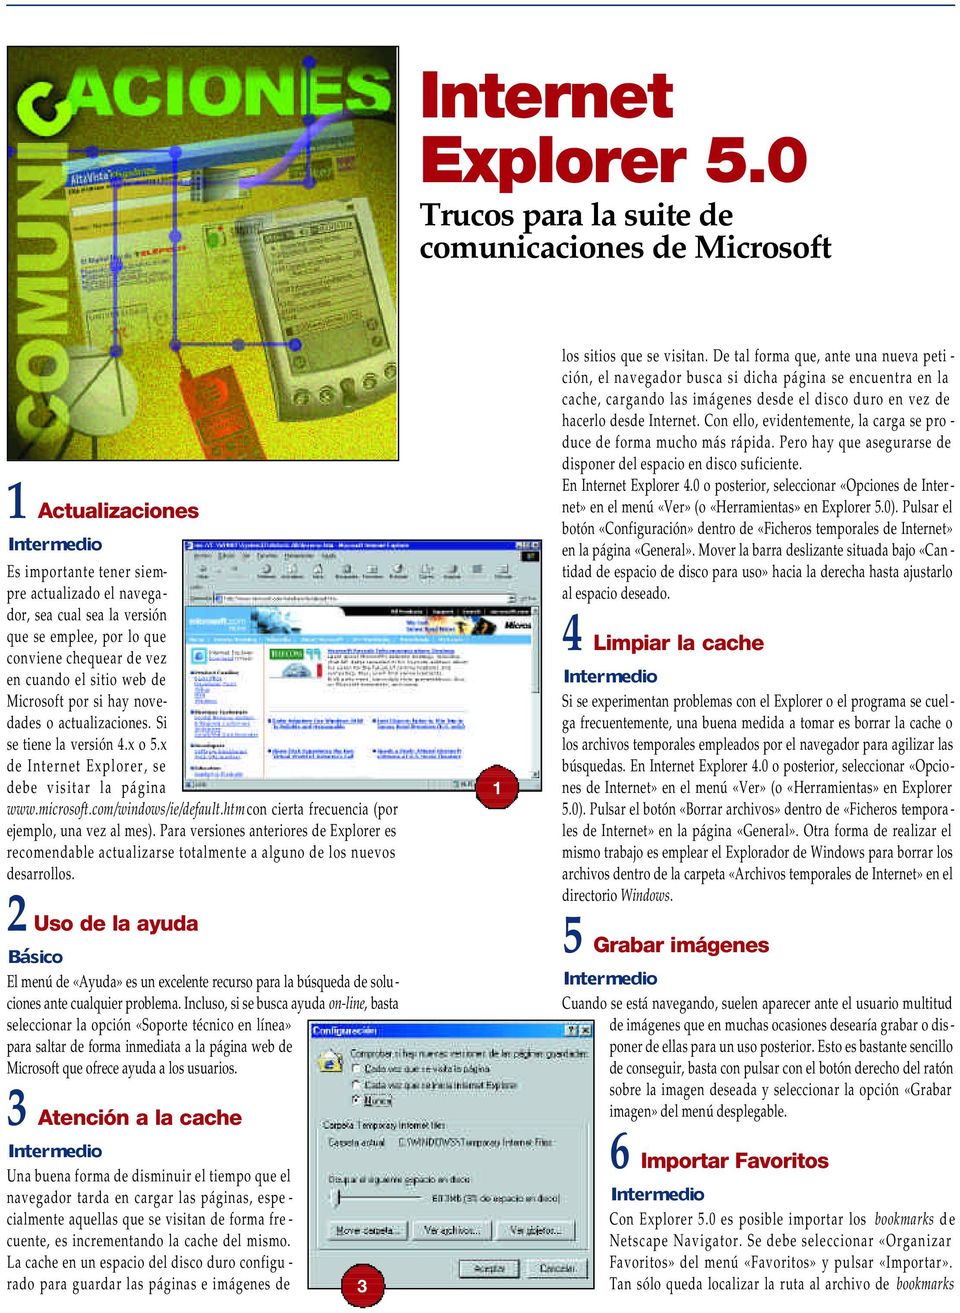 vez en cuando el sitio web de Microsoft por si hay novedades o actualizaciones. Si se tiene la versión 4.x o 5.x de Internet Explorer, se debe visitar la página www.microsoft.com/windows/ie/default.